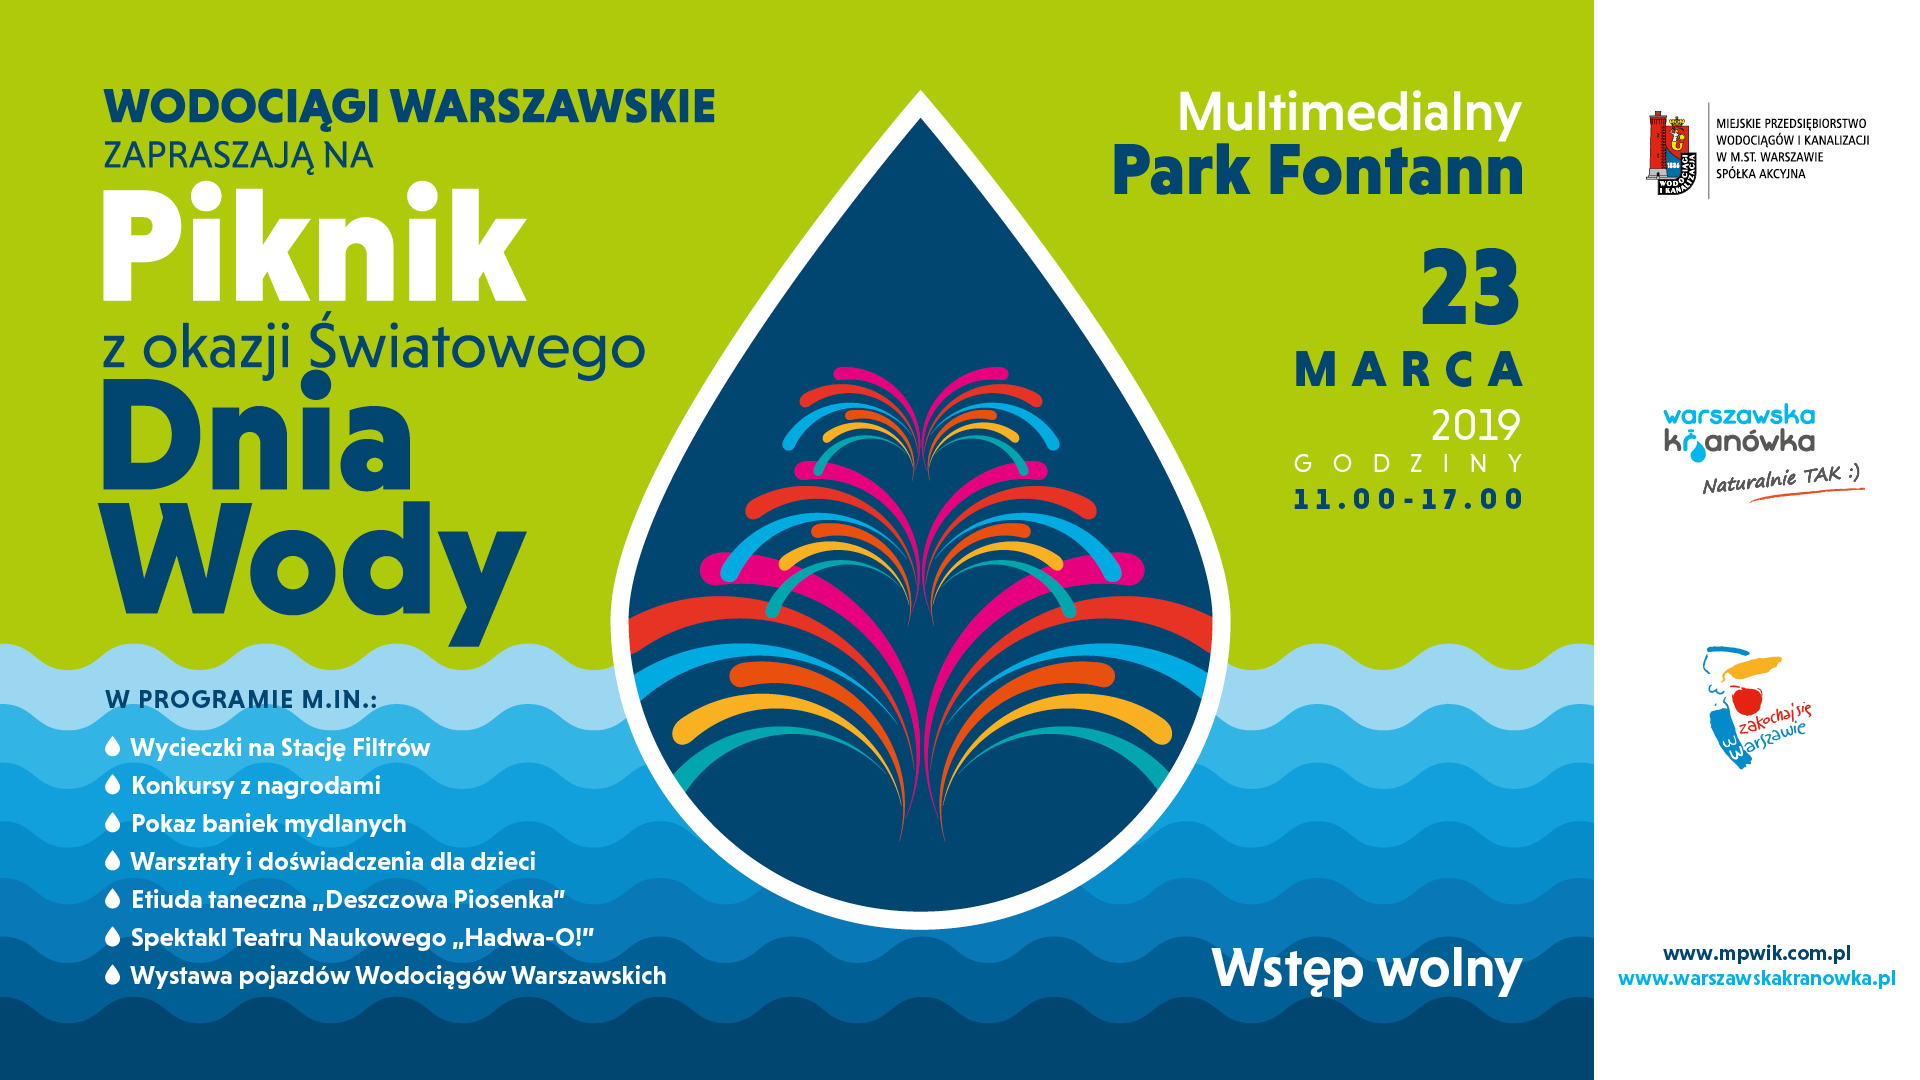 Piknik ekologiczny organizowany przez Wodociągi Warszawskie